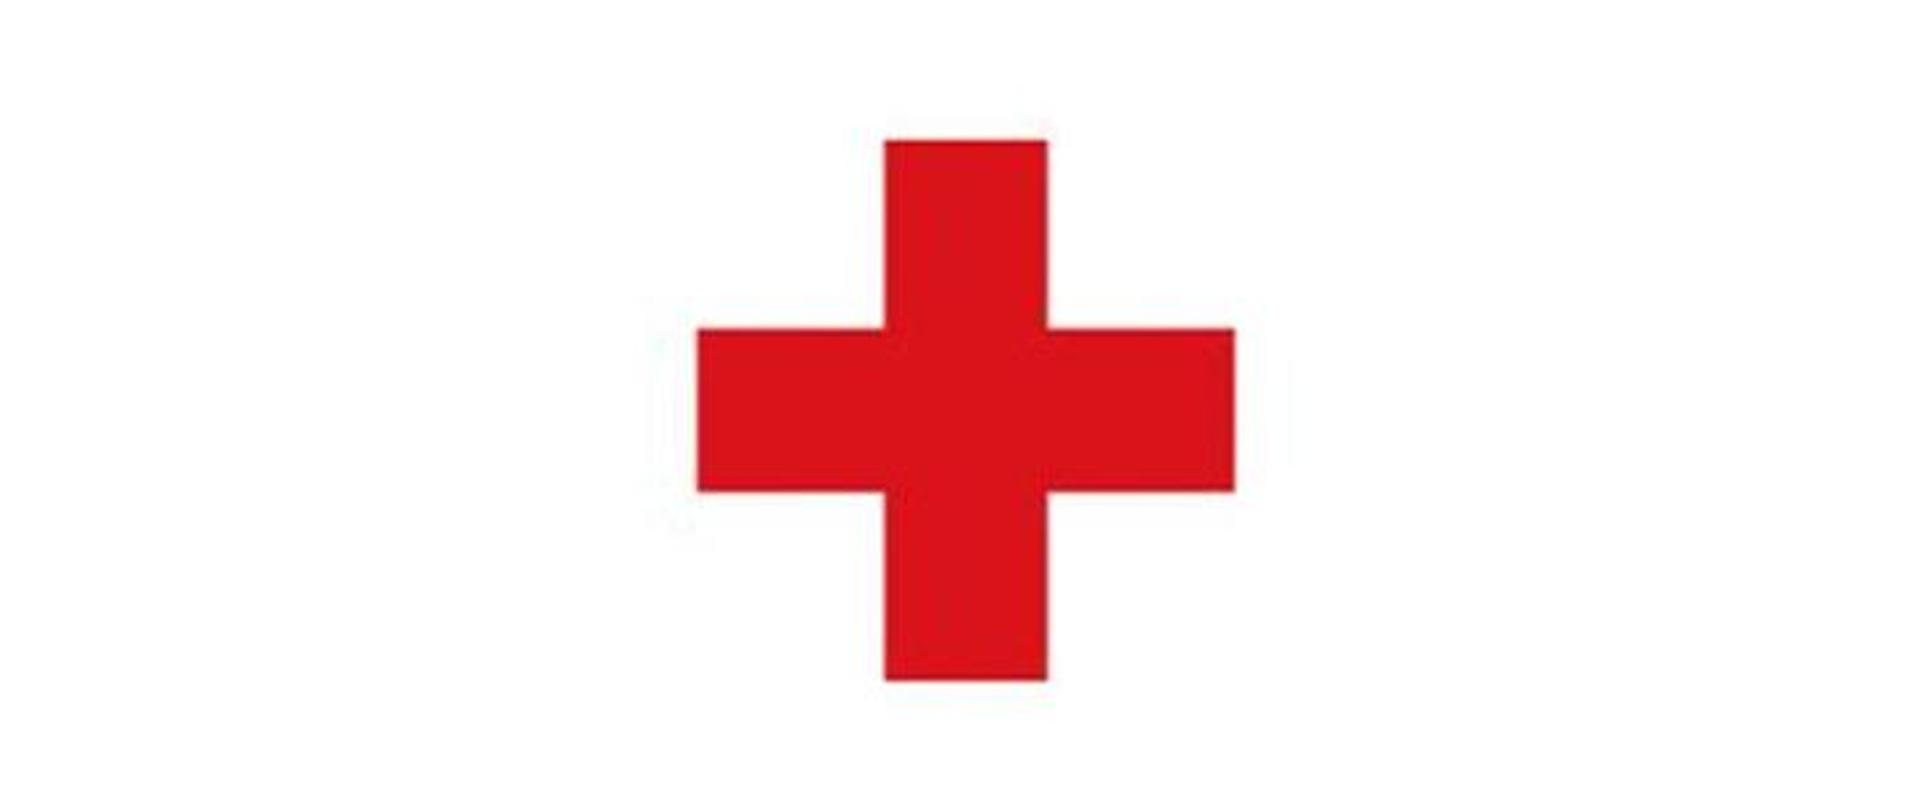 Na zdjęciu widać logo czerwonego krzyża